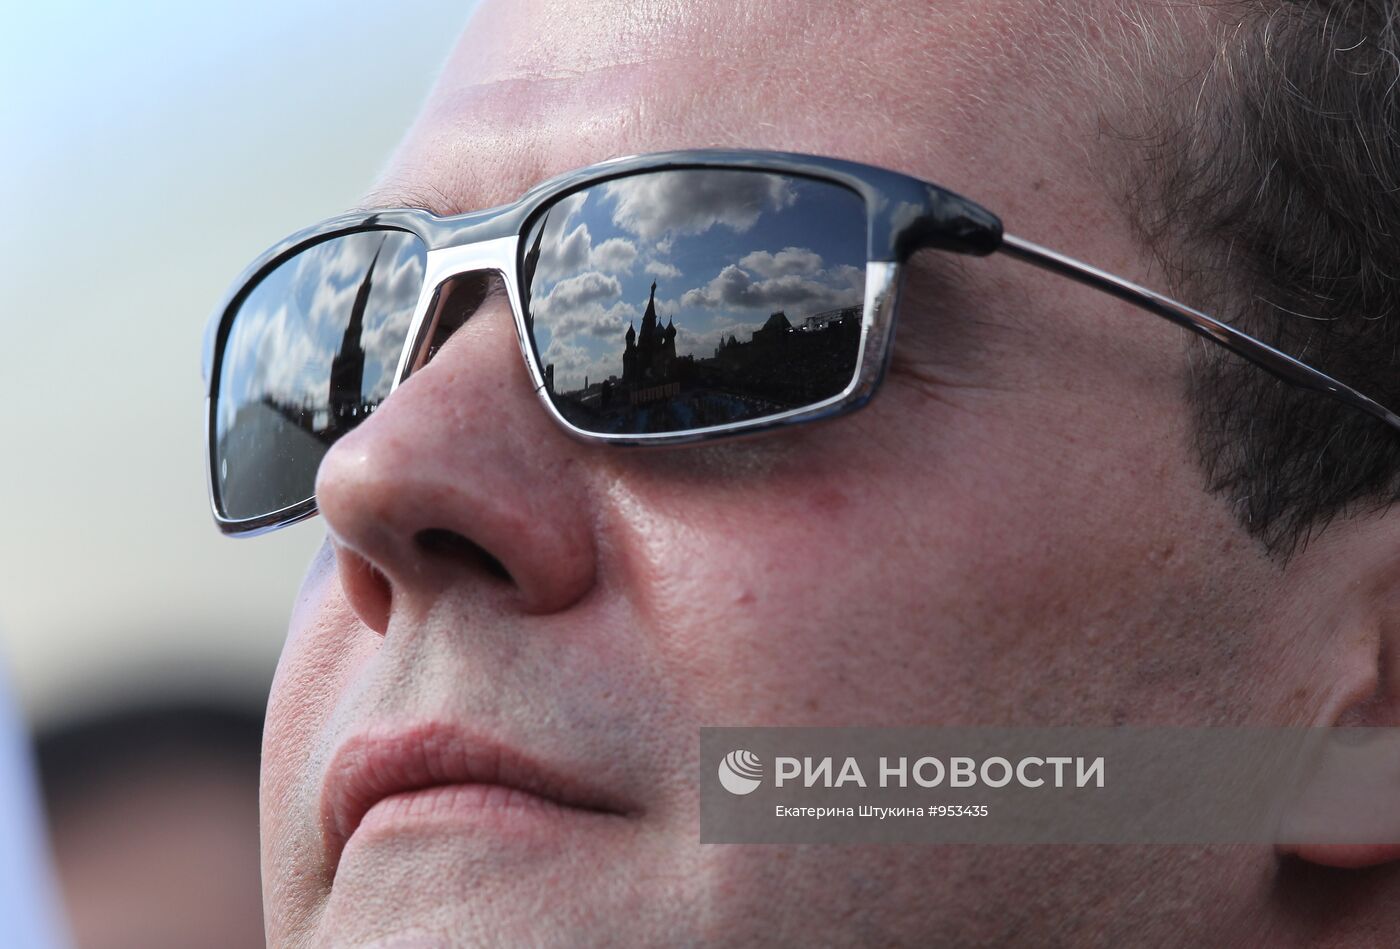 Д.Медведев принял участие в мероприятиях в День города